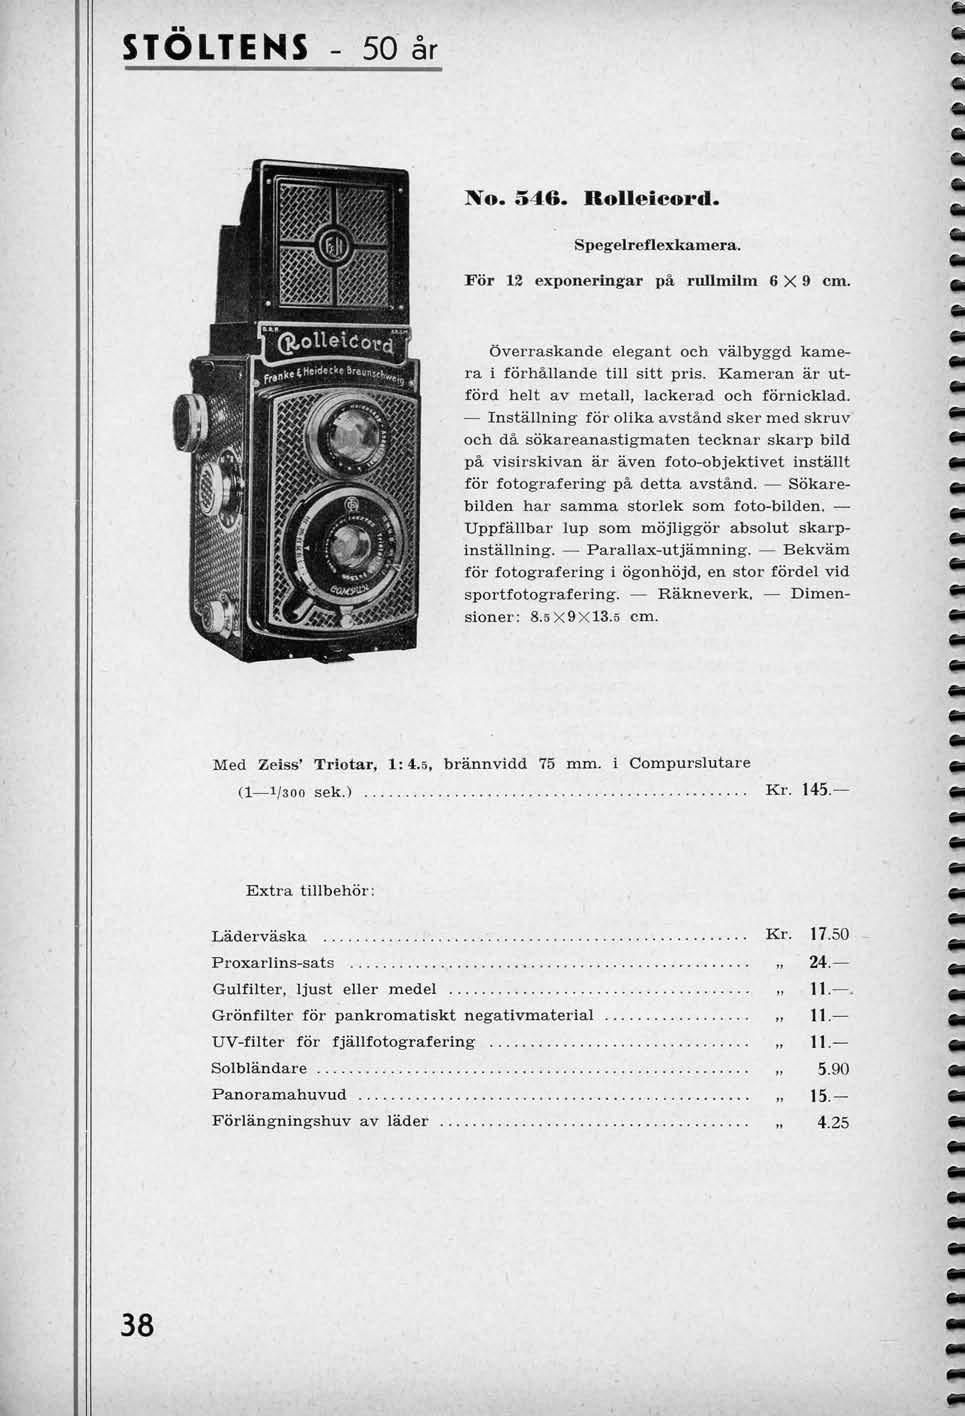 STOLTENS - 50 ar No. 546. RoUeicord. Spegelreflexkamera. For 12 exponeringar pa rullmilm 6X9 cm. Overraskande elegant och valbyggd kamera i forhallande till sitt pris.